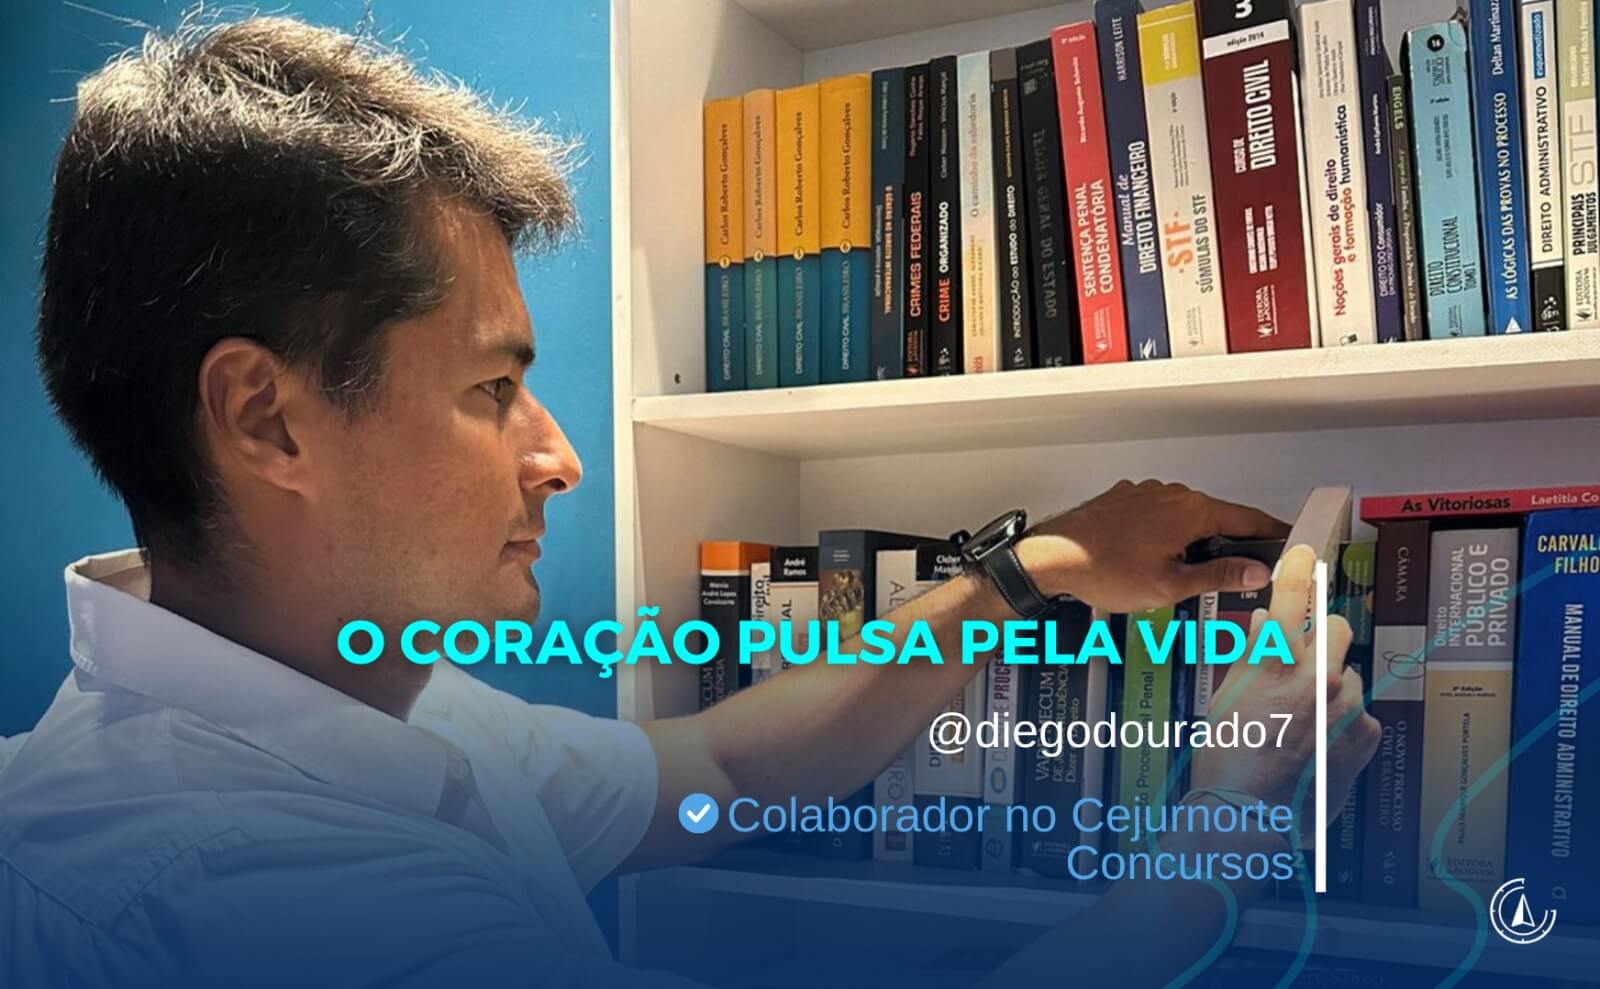 ''O corao pulsa pela vida'' - por Diego Dourado